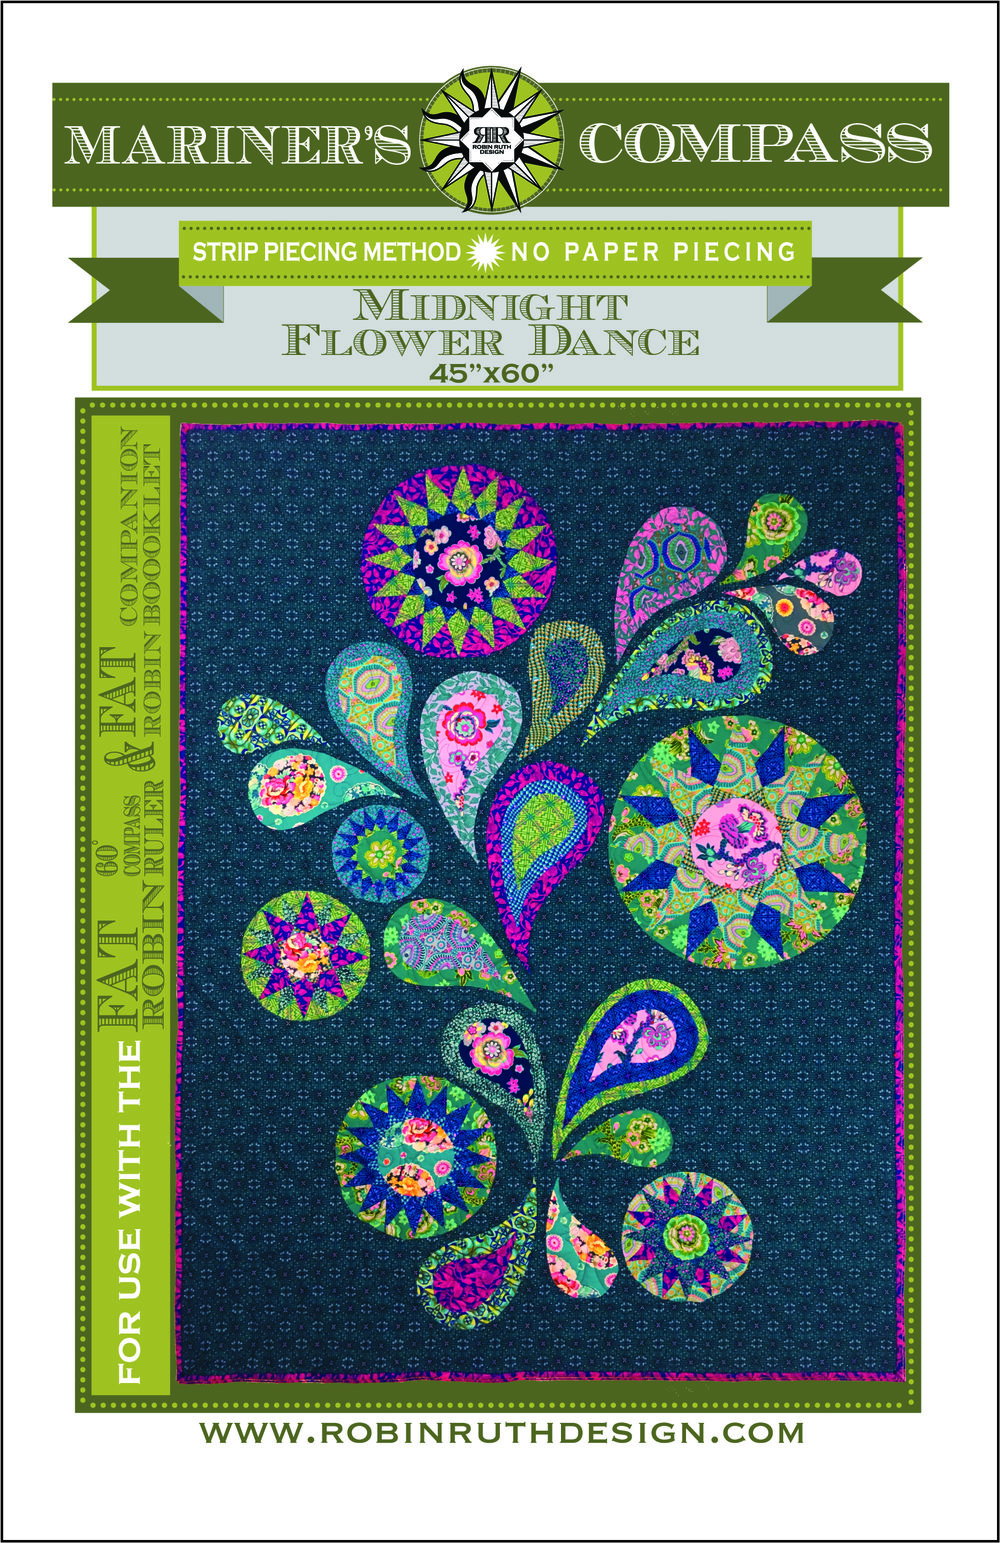 Midnight Flower Dance Front Cover.jpg